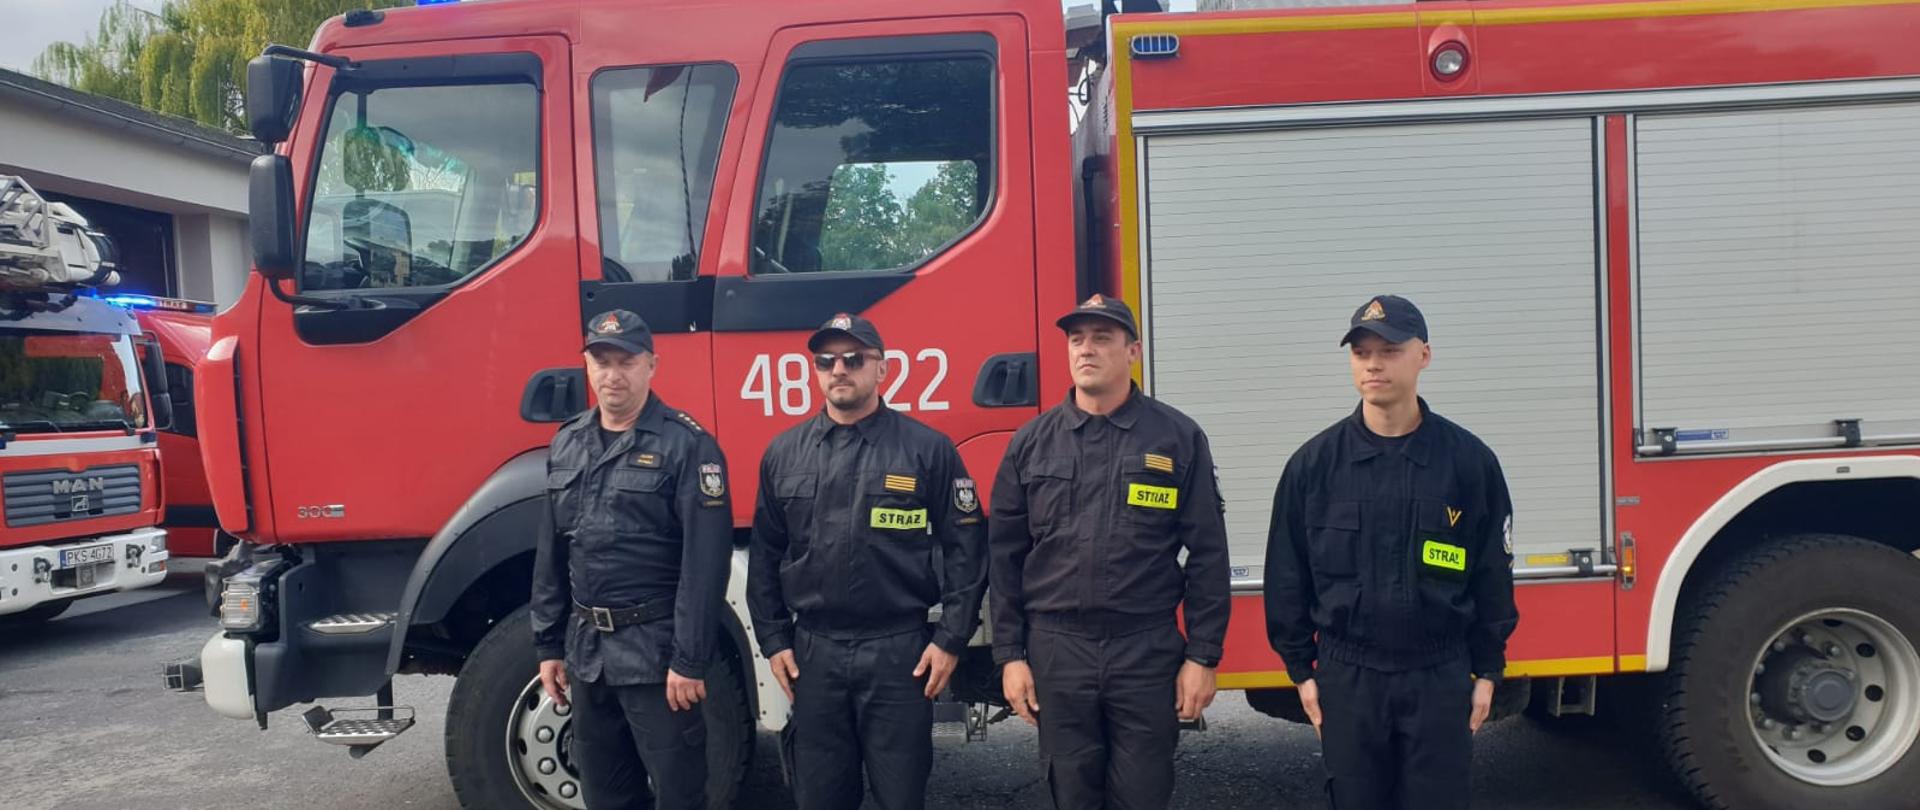 STRAŻACY WRÓCILI Z GRECJI. Na zdjęciu widzimy czterech kościańskich strażaków z drugiej zmiany, którzy wrócili z Grecji, za nimi samochód pożarniczy